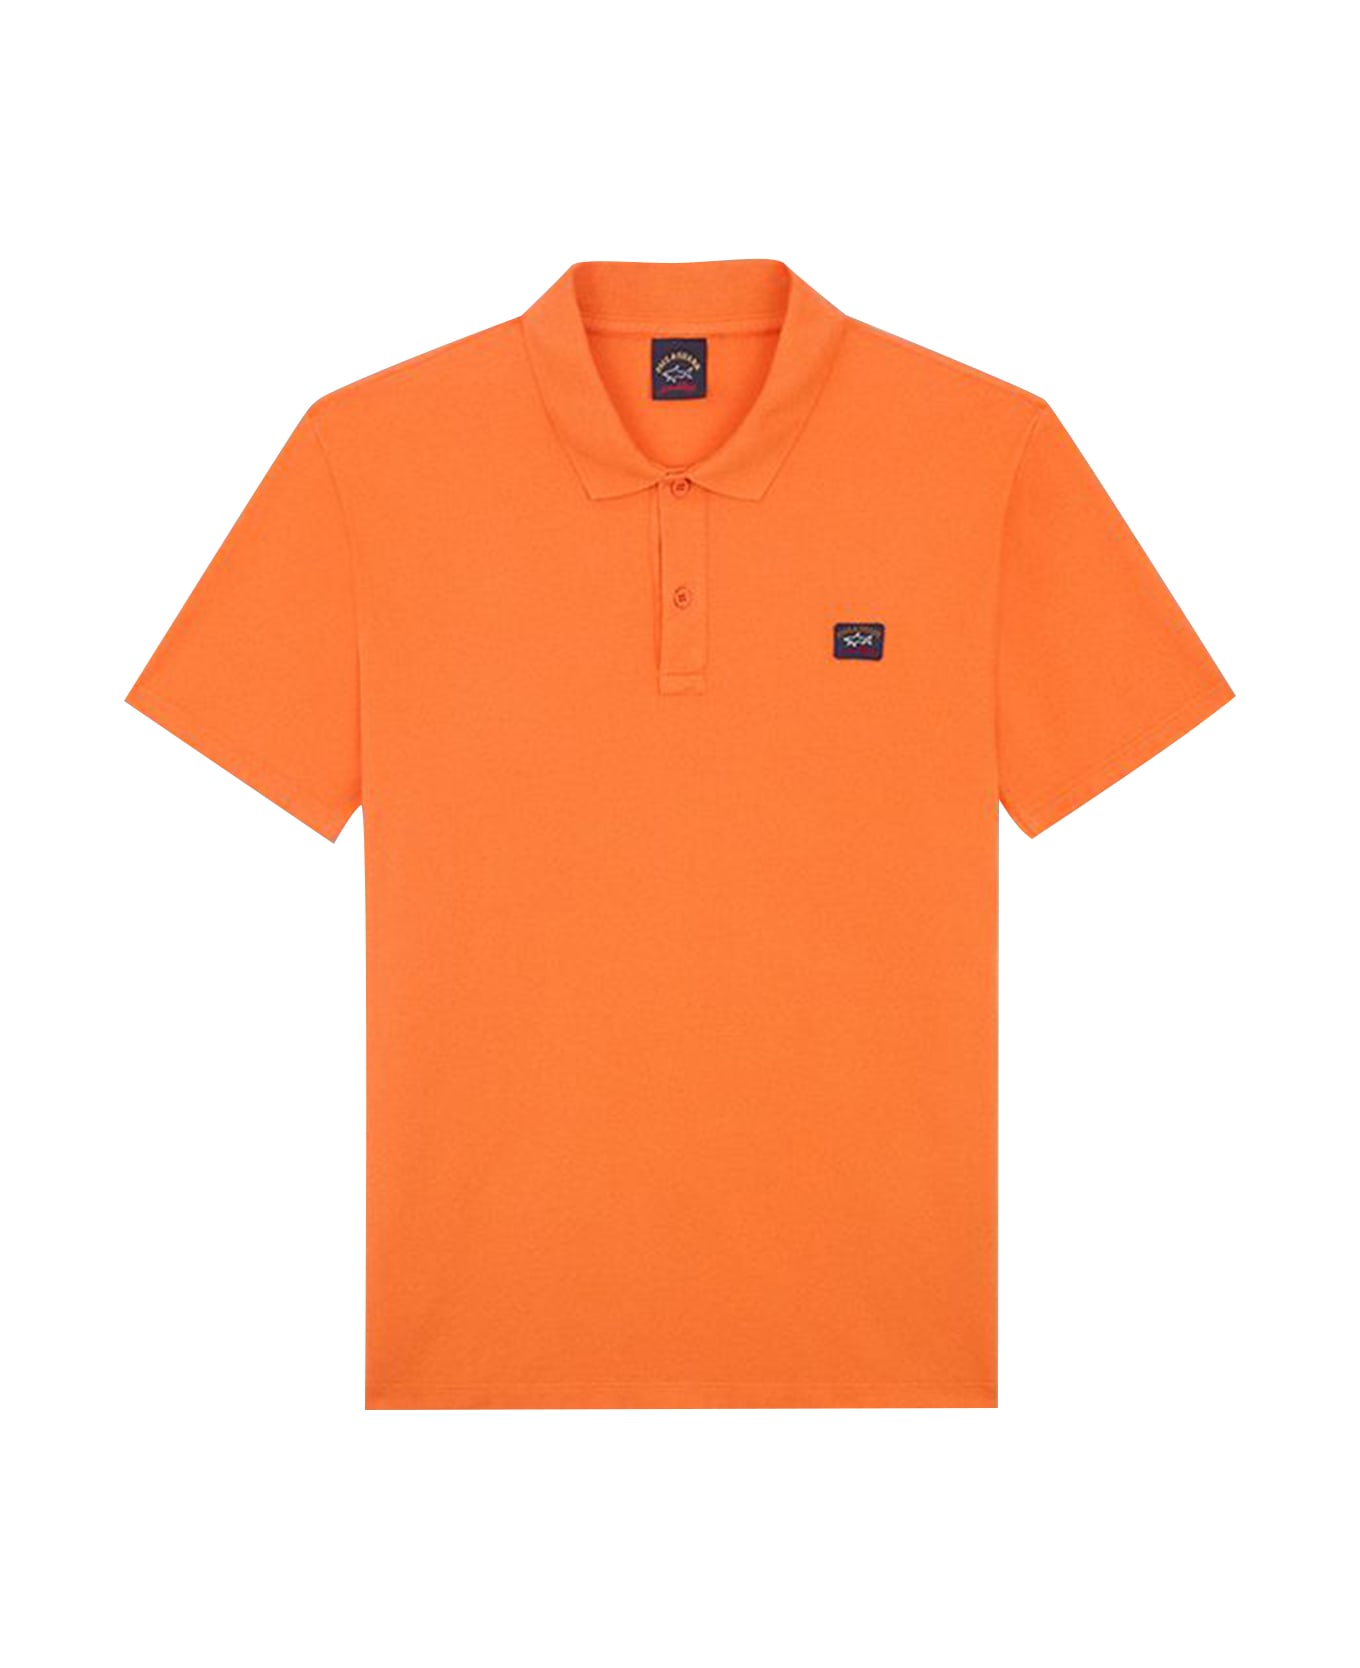 Paul&Shark Garment Dyed Pique' Cotton Polo - Arancio